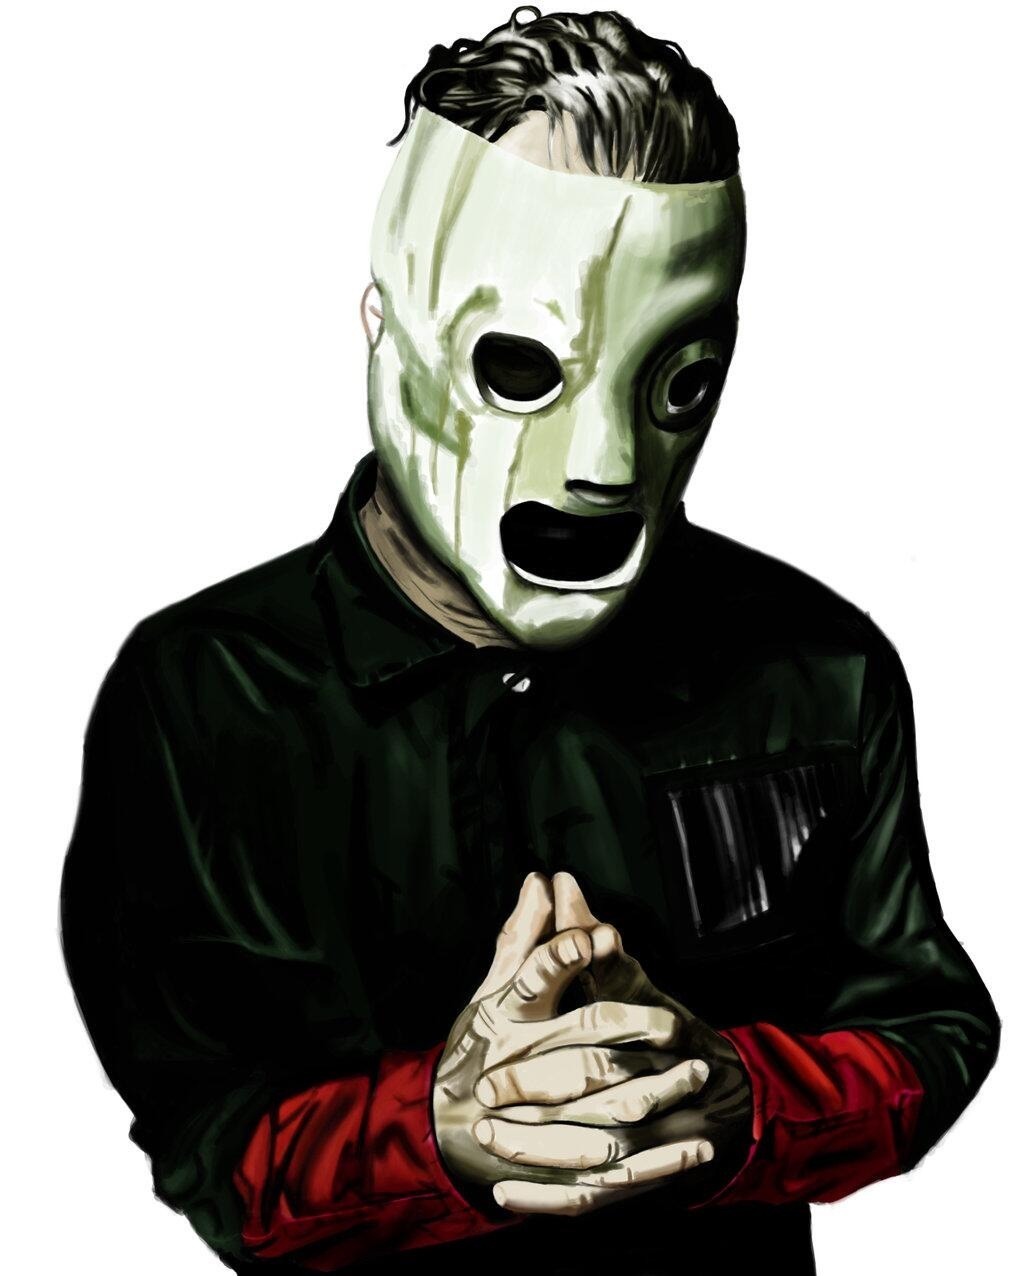 Corey Taylor Slipknot